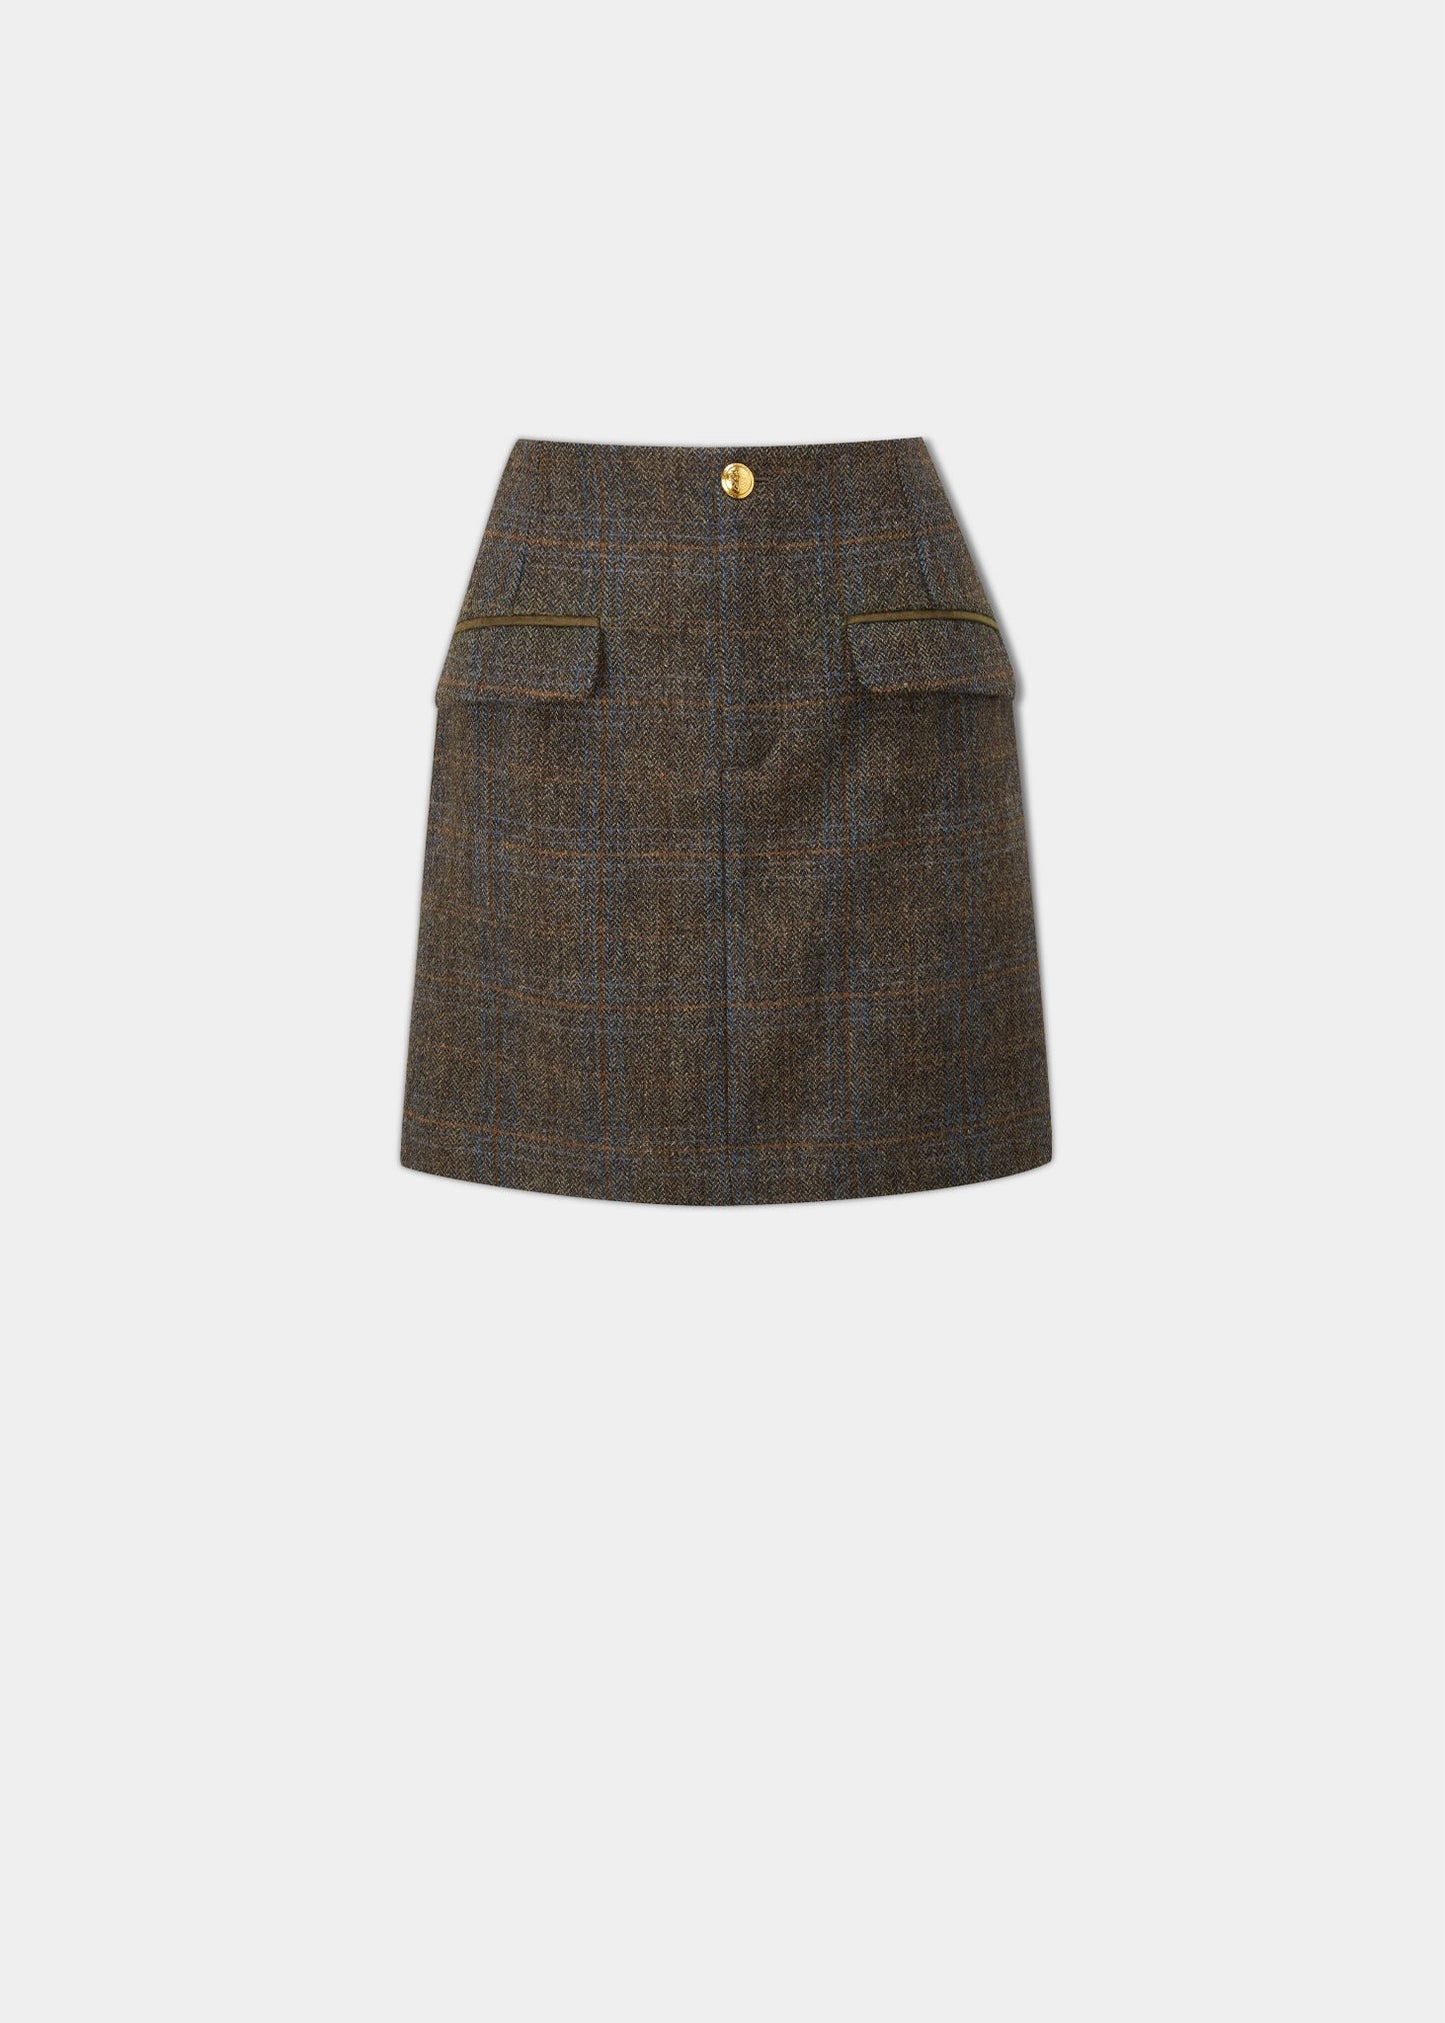 Surrey Ladies Tweed Skirt In Taupe